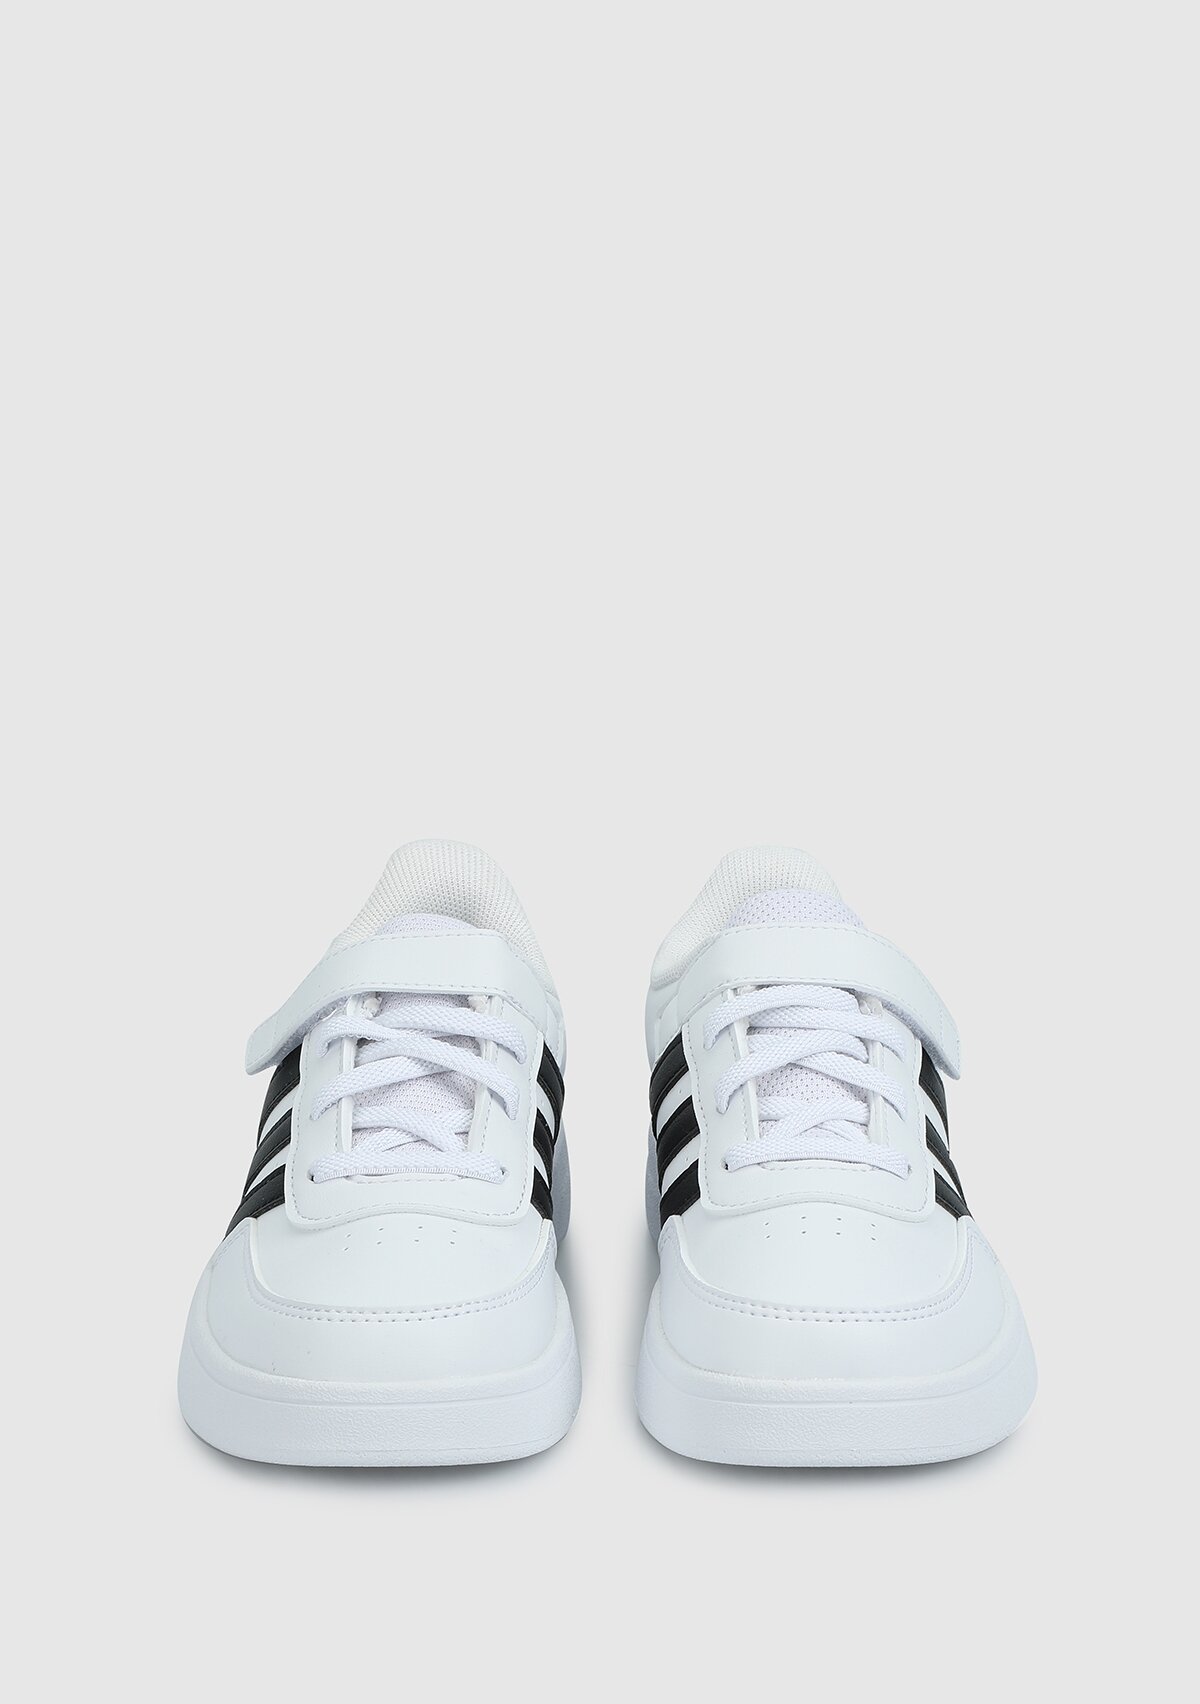 adidas Breaknet 2.0 El K beyaz unısex tenis Ayakkabısı hp8963